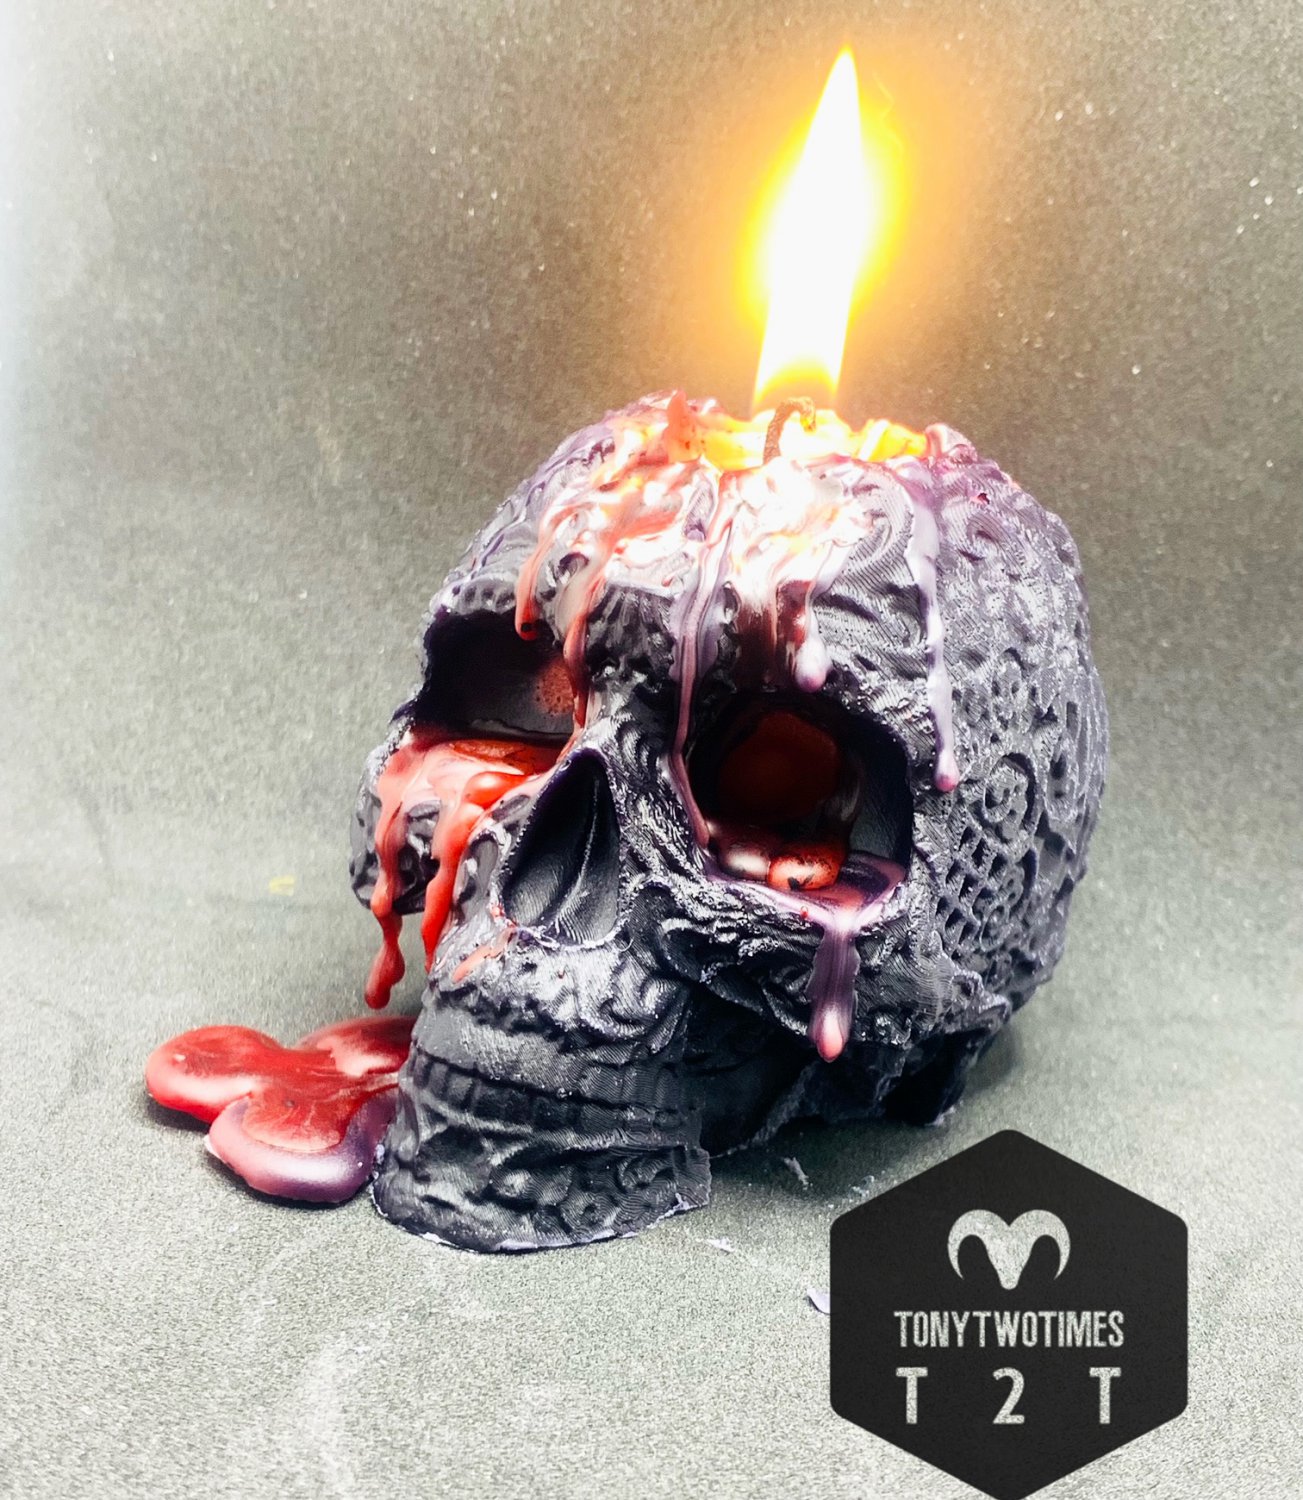 Ritual Bleeding Skull Candle